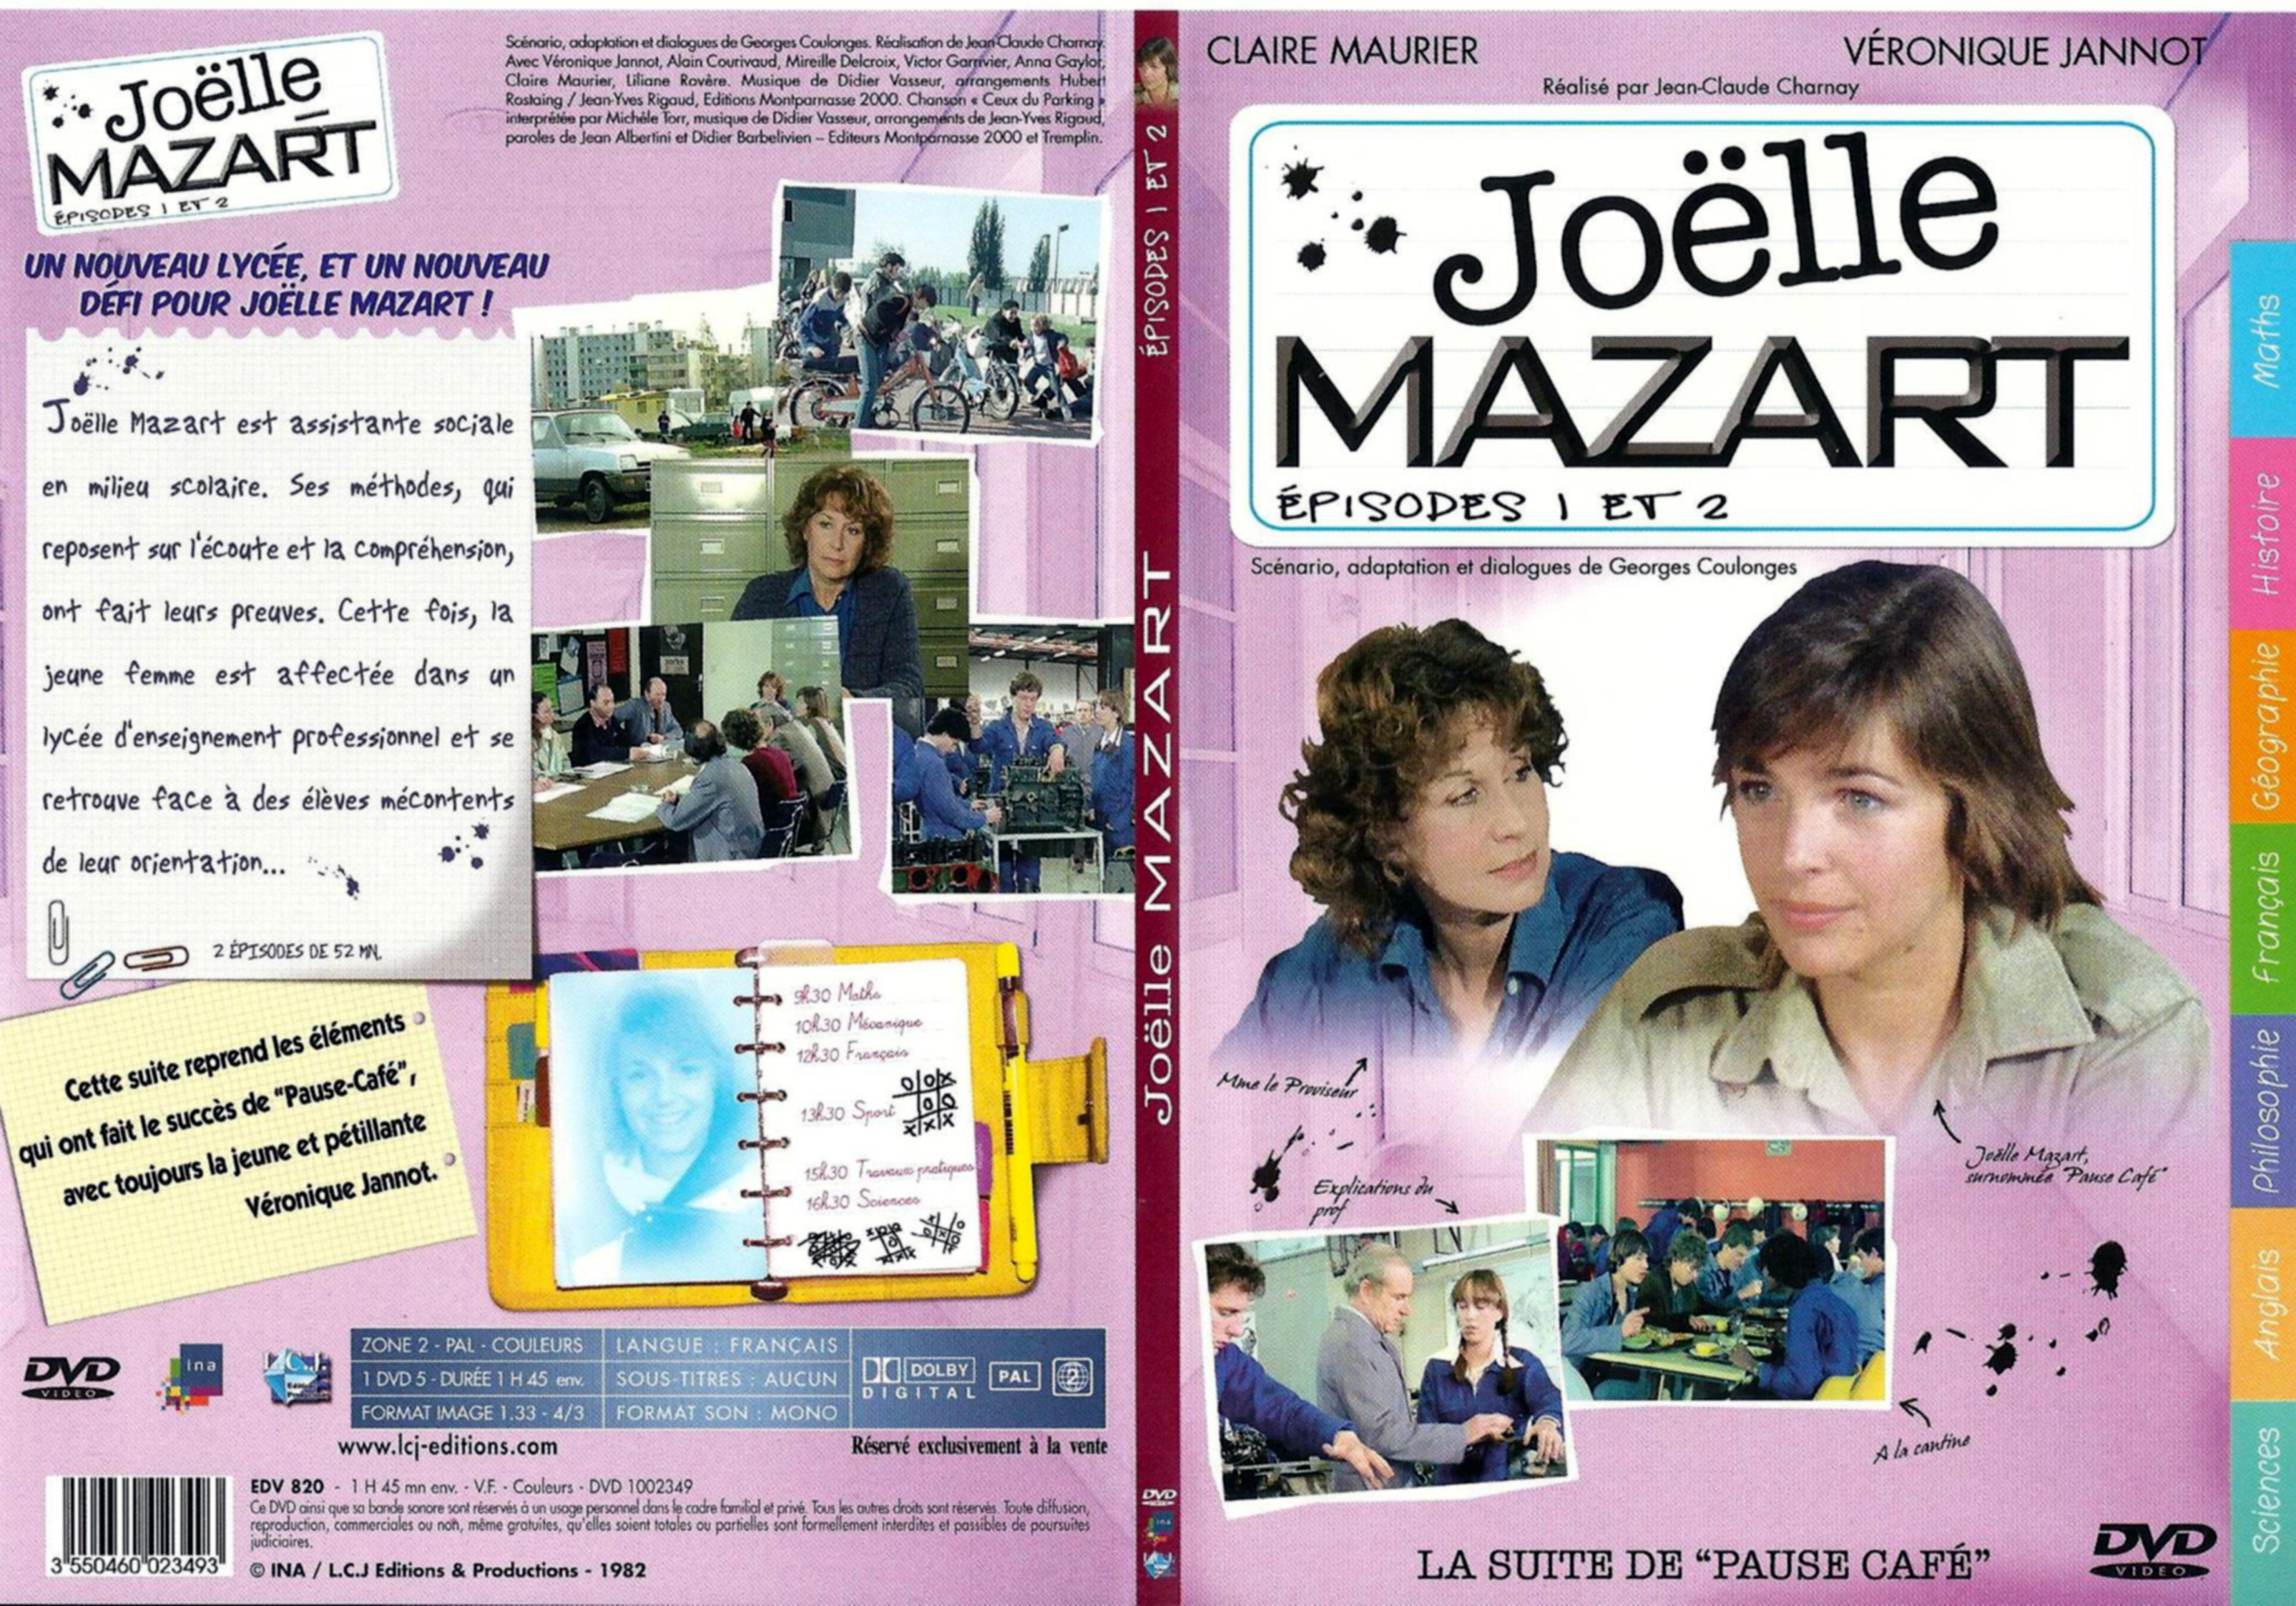 Jaquette DVD Joelle Mazart Episode 1 et 2